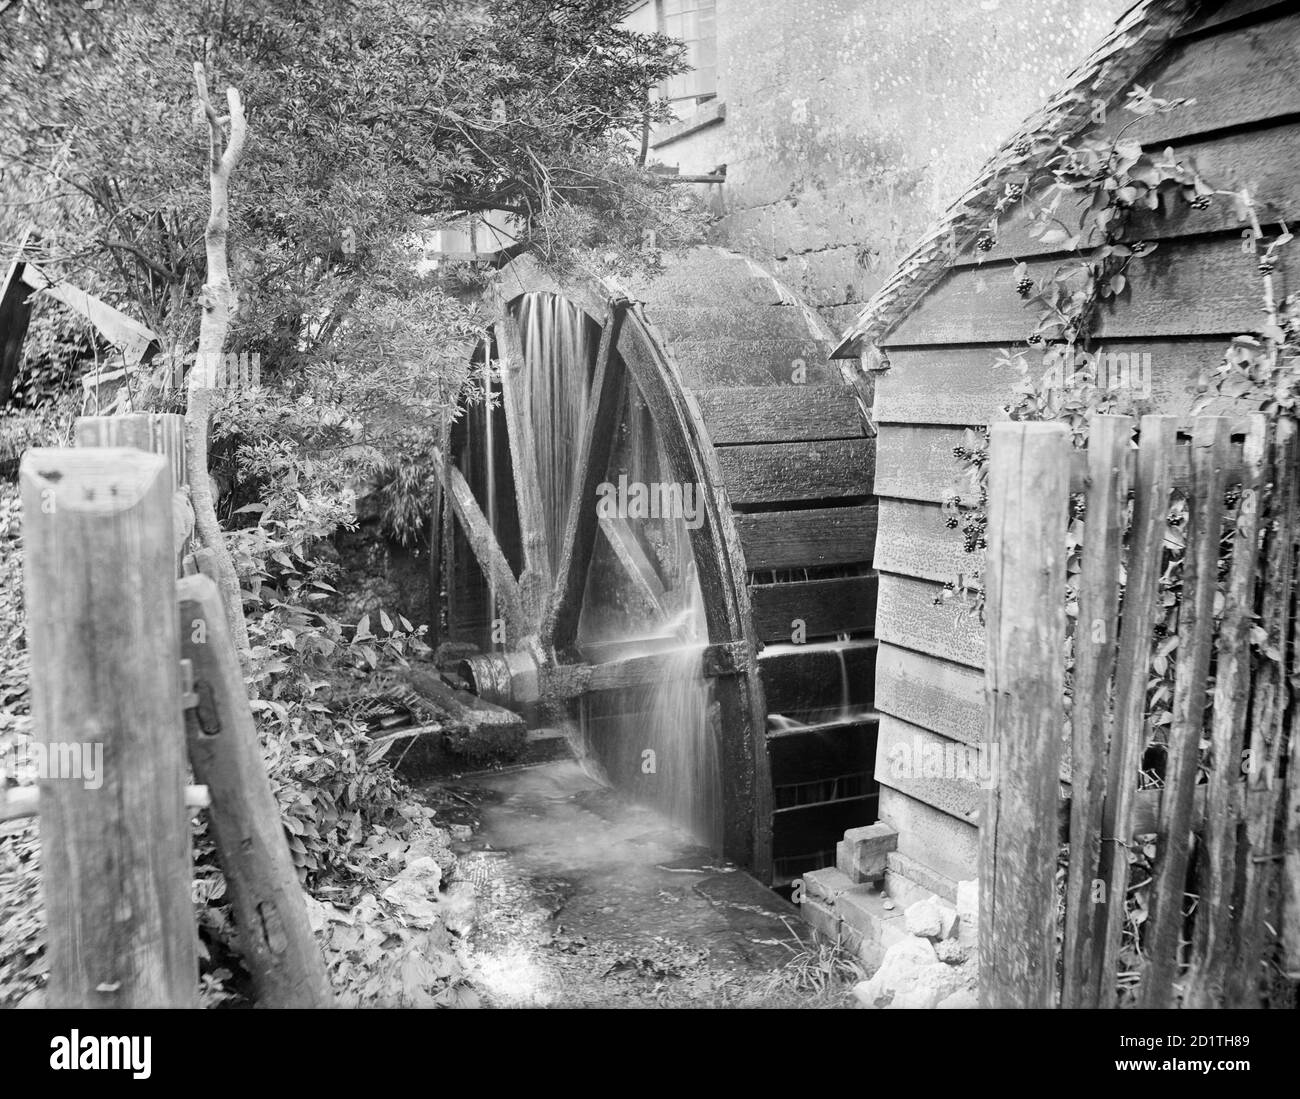 OLD MILL, Chipping Campden, Gloucestershire. Una vista esterna che mostra il waterwheel al lavoro. A Chipping Campden ci sono quattro mulini d'acqua sui siti di mulini medievali menzionati nel DomMartedi Book. Fotografato nel 1900 da Henry Taunt. Foto Stock